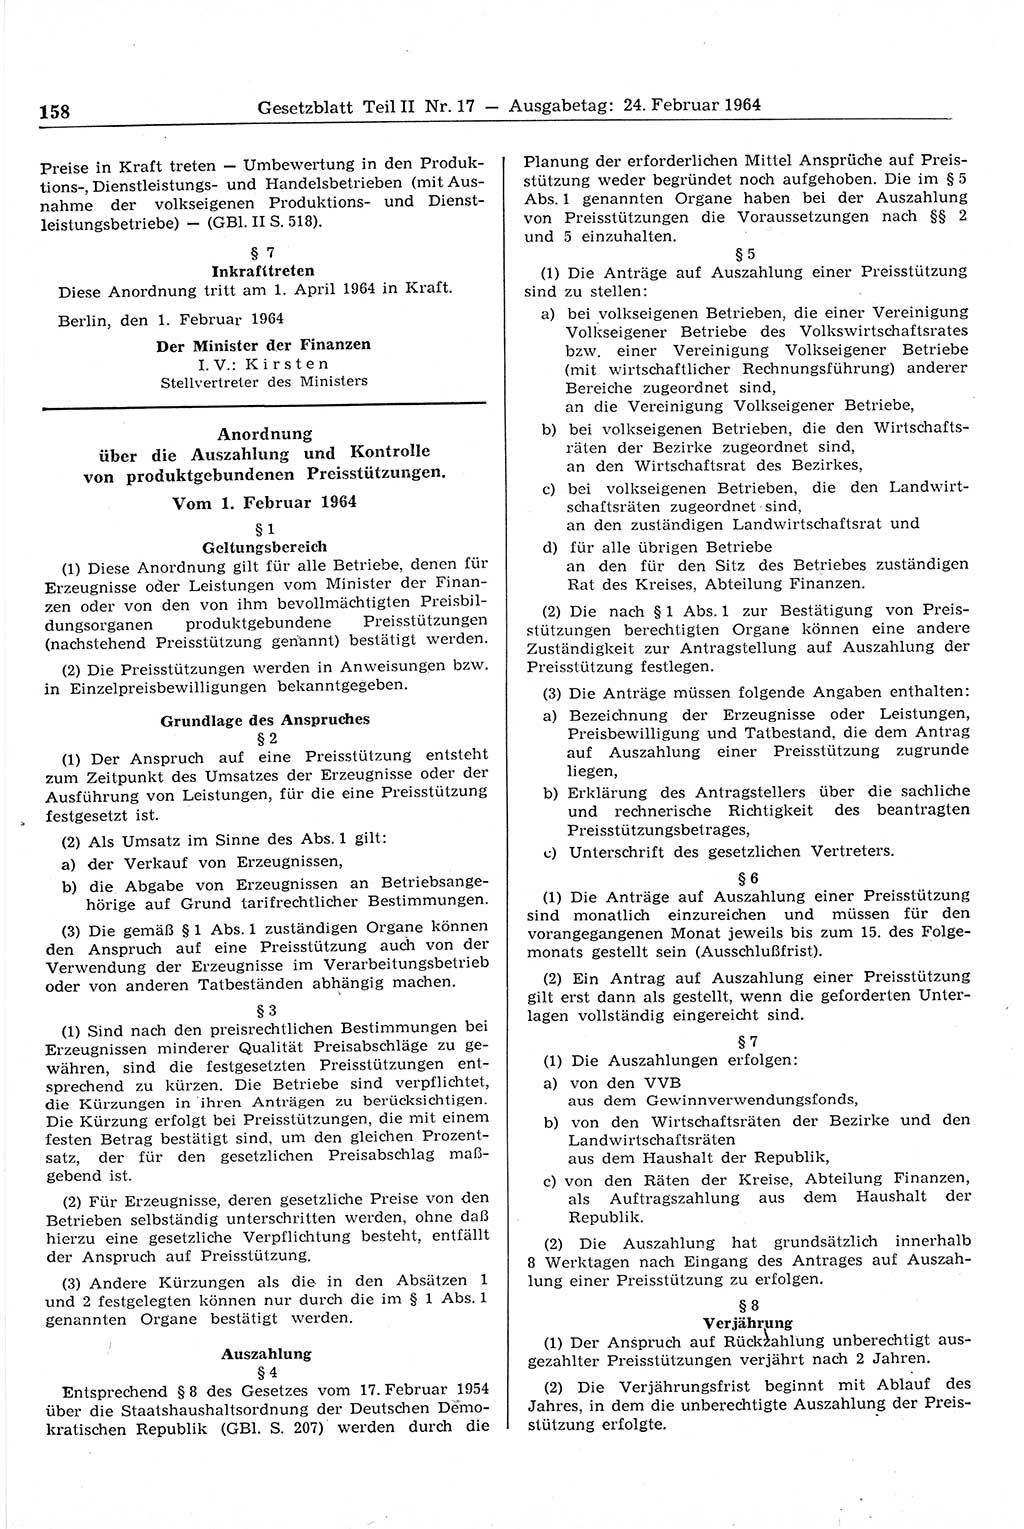 Gesetzblatt (GBl.) der Deutschen Demokratischen Republik (DDR) Teil ⅠⅠ 1964, Seite 158 (GBl. DDR ⅠⅠ 1964, S. 158)